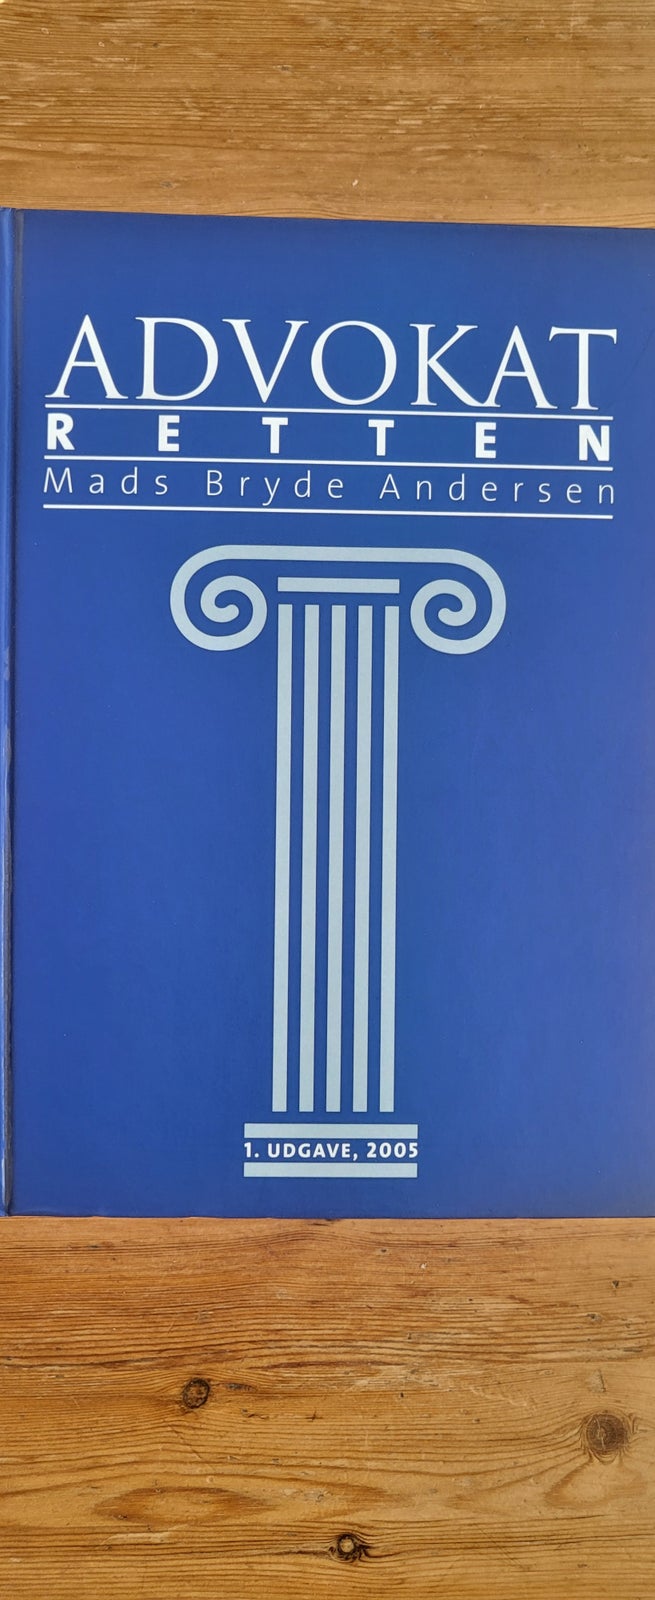 Advokatretten, Mads Bryde Andersen, år 2005